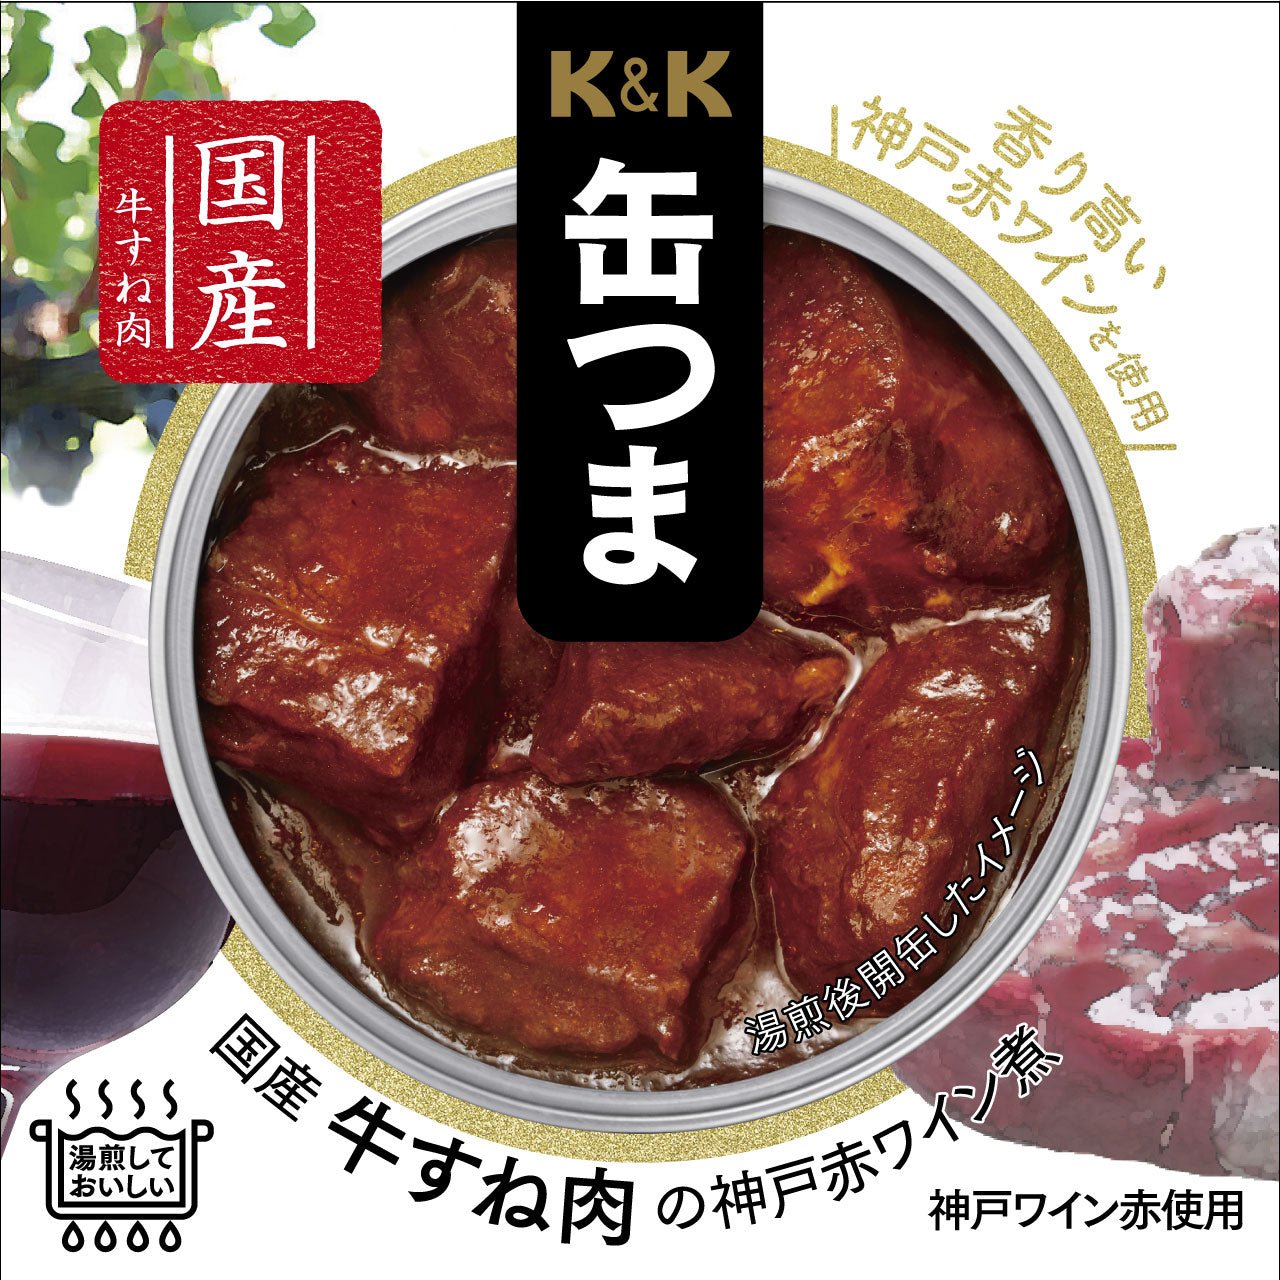 K&K Can Koizuma Beef Sune Meat Kobe Kobe Hervido